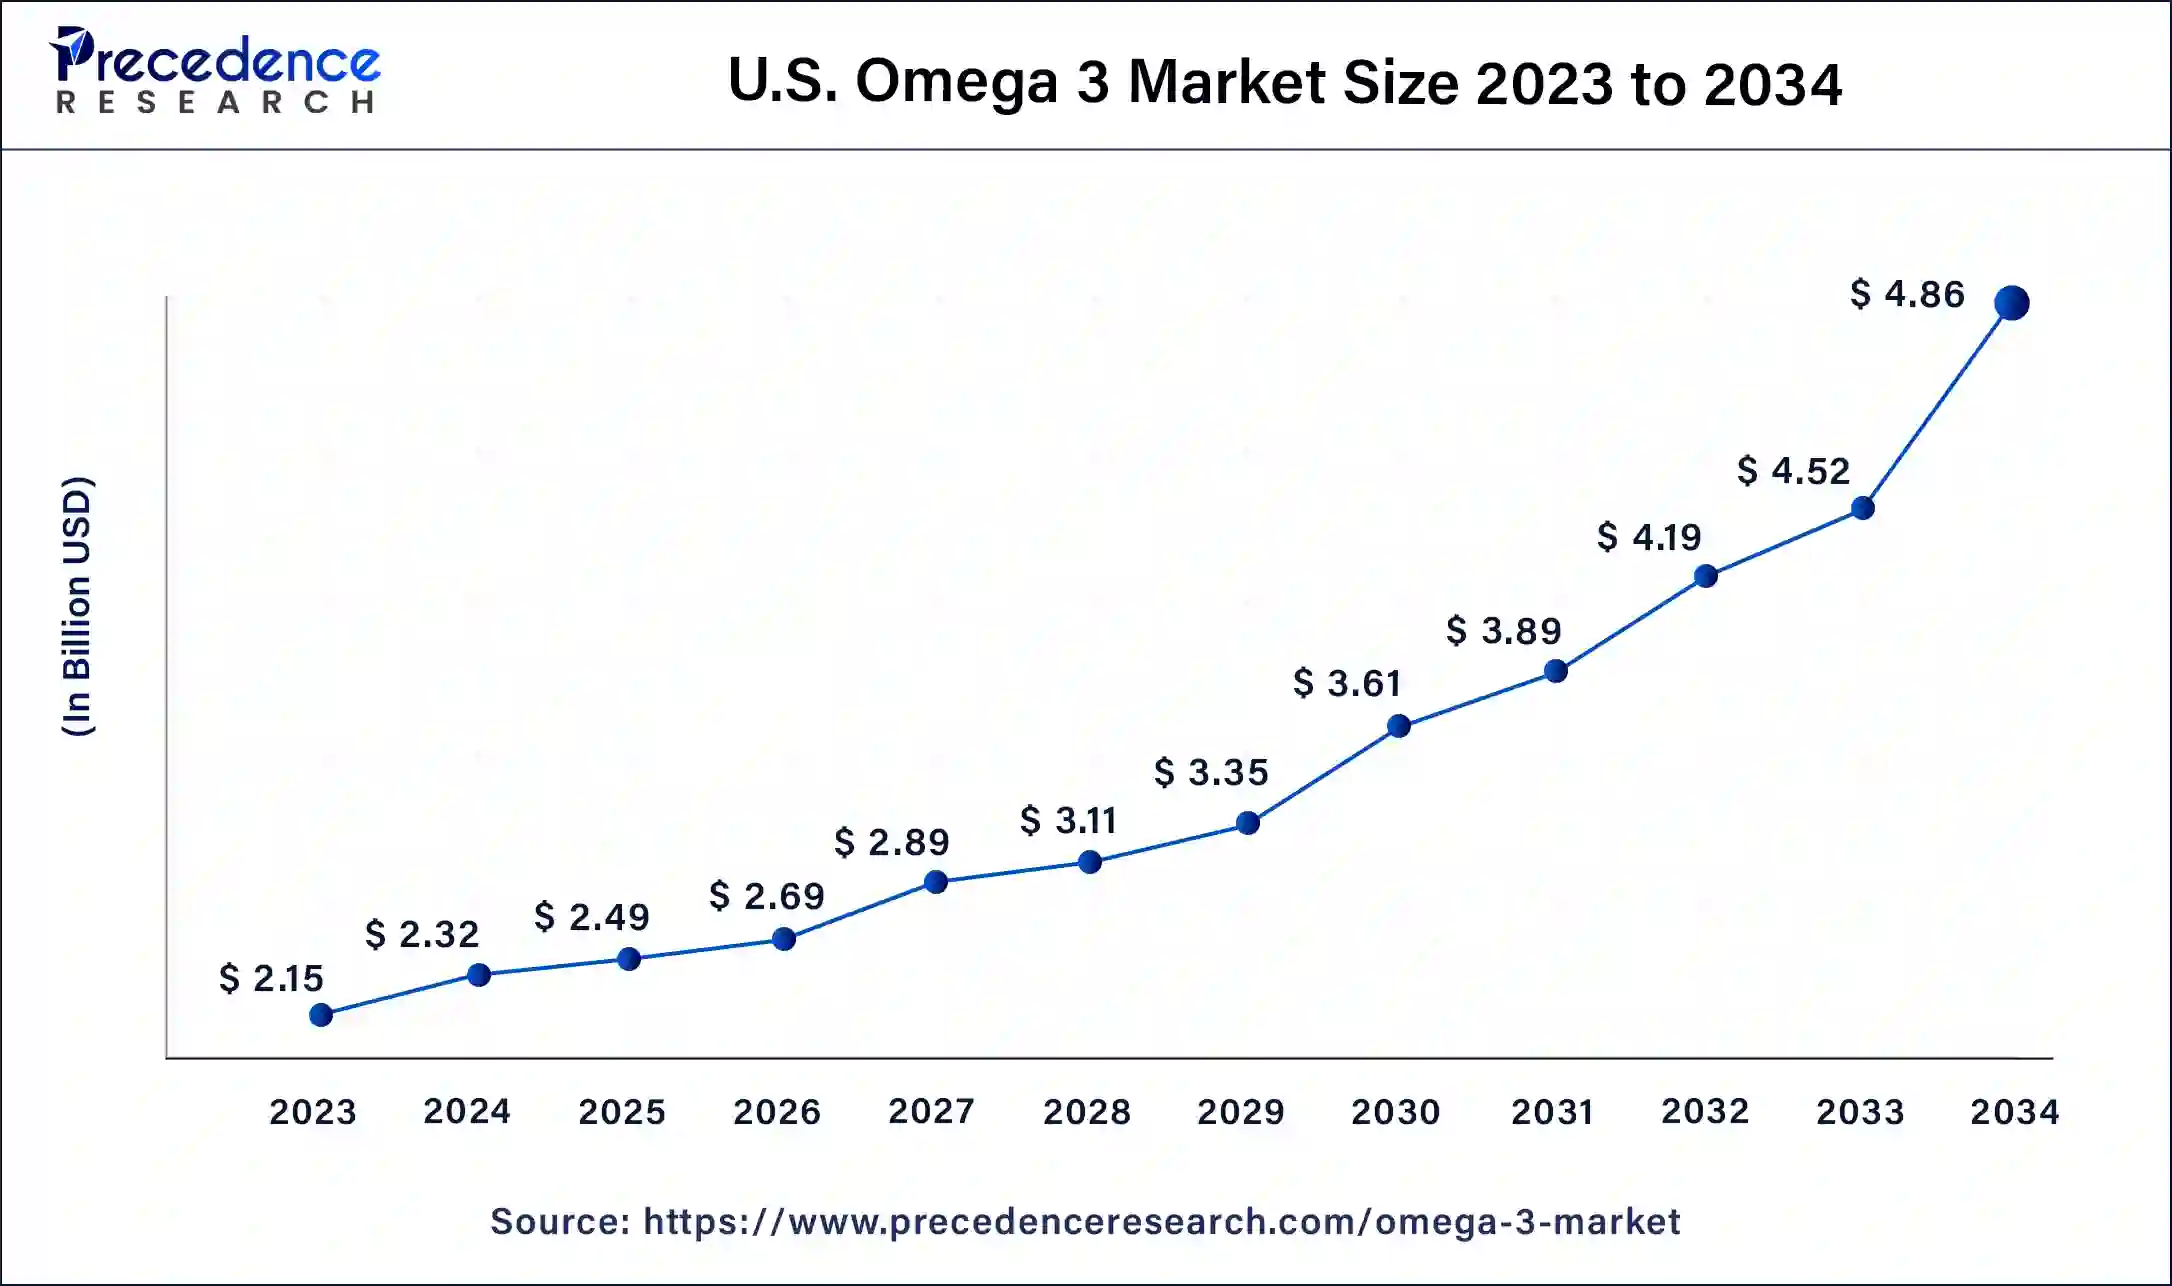 U.S. Omega 3 Market Size 2024 to 2034